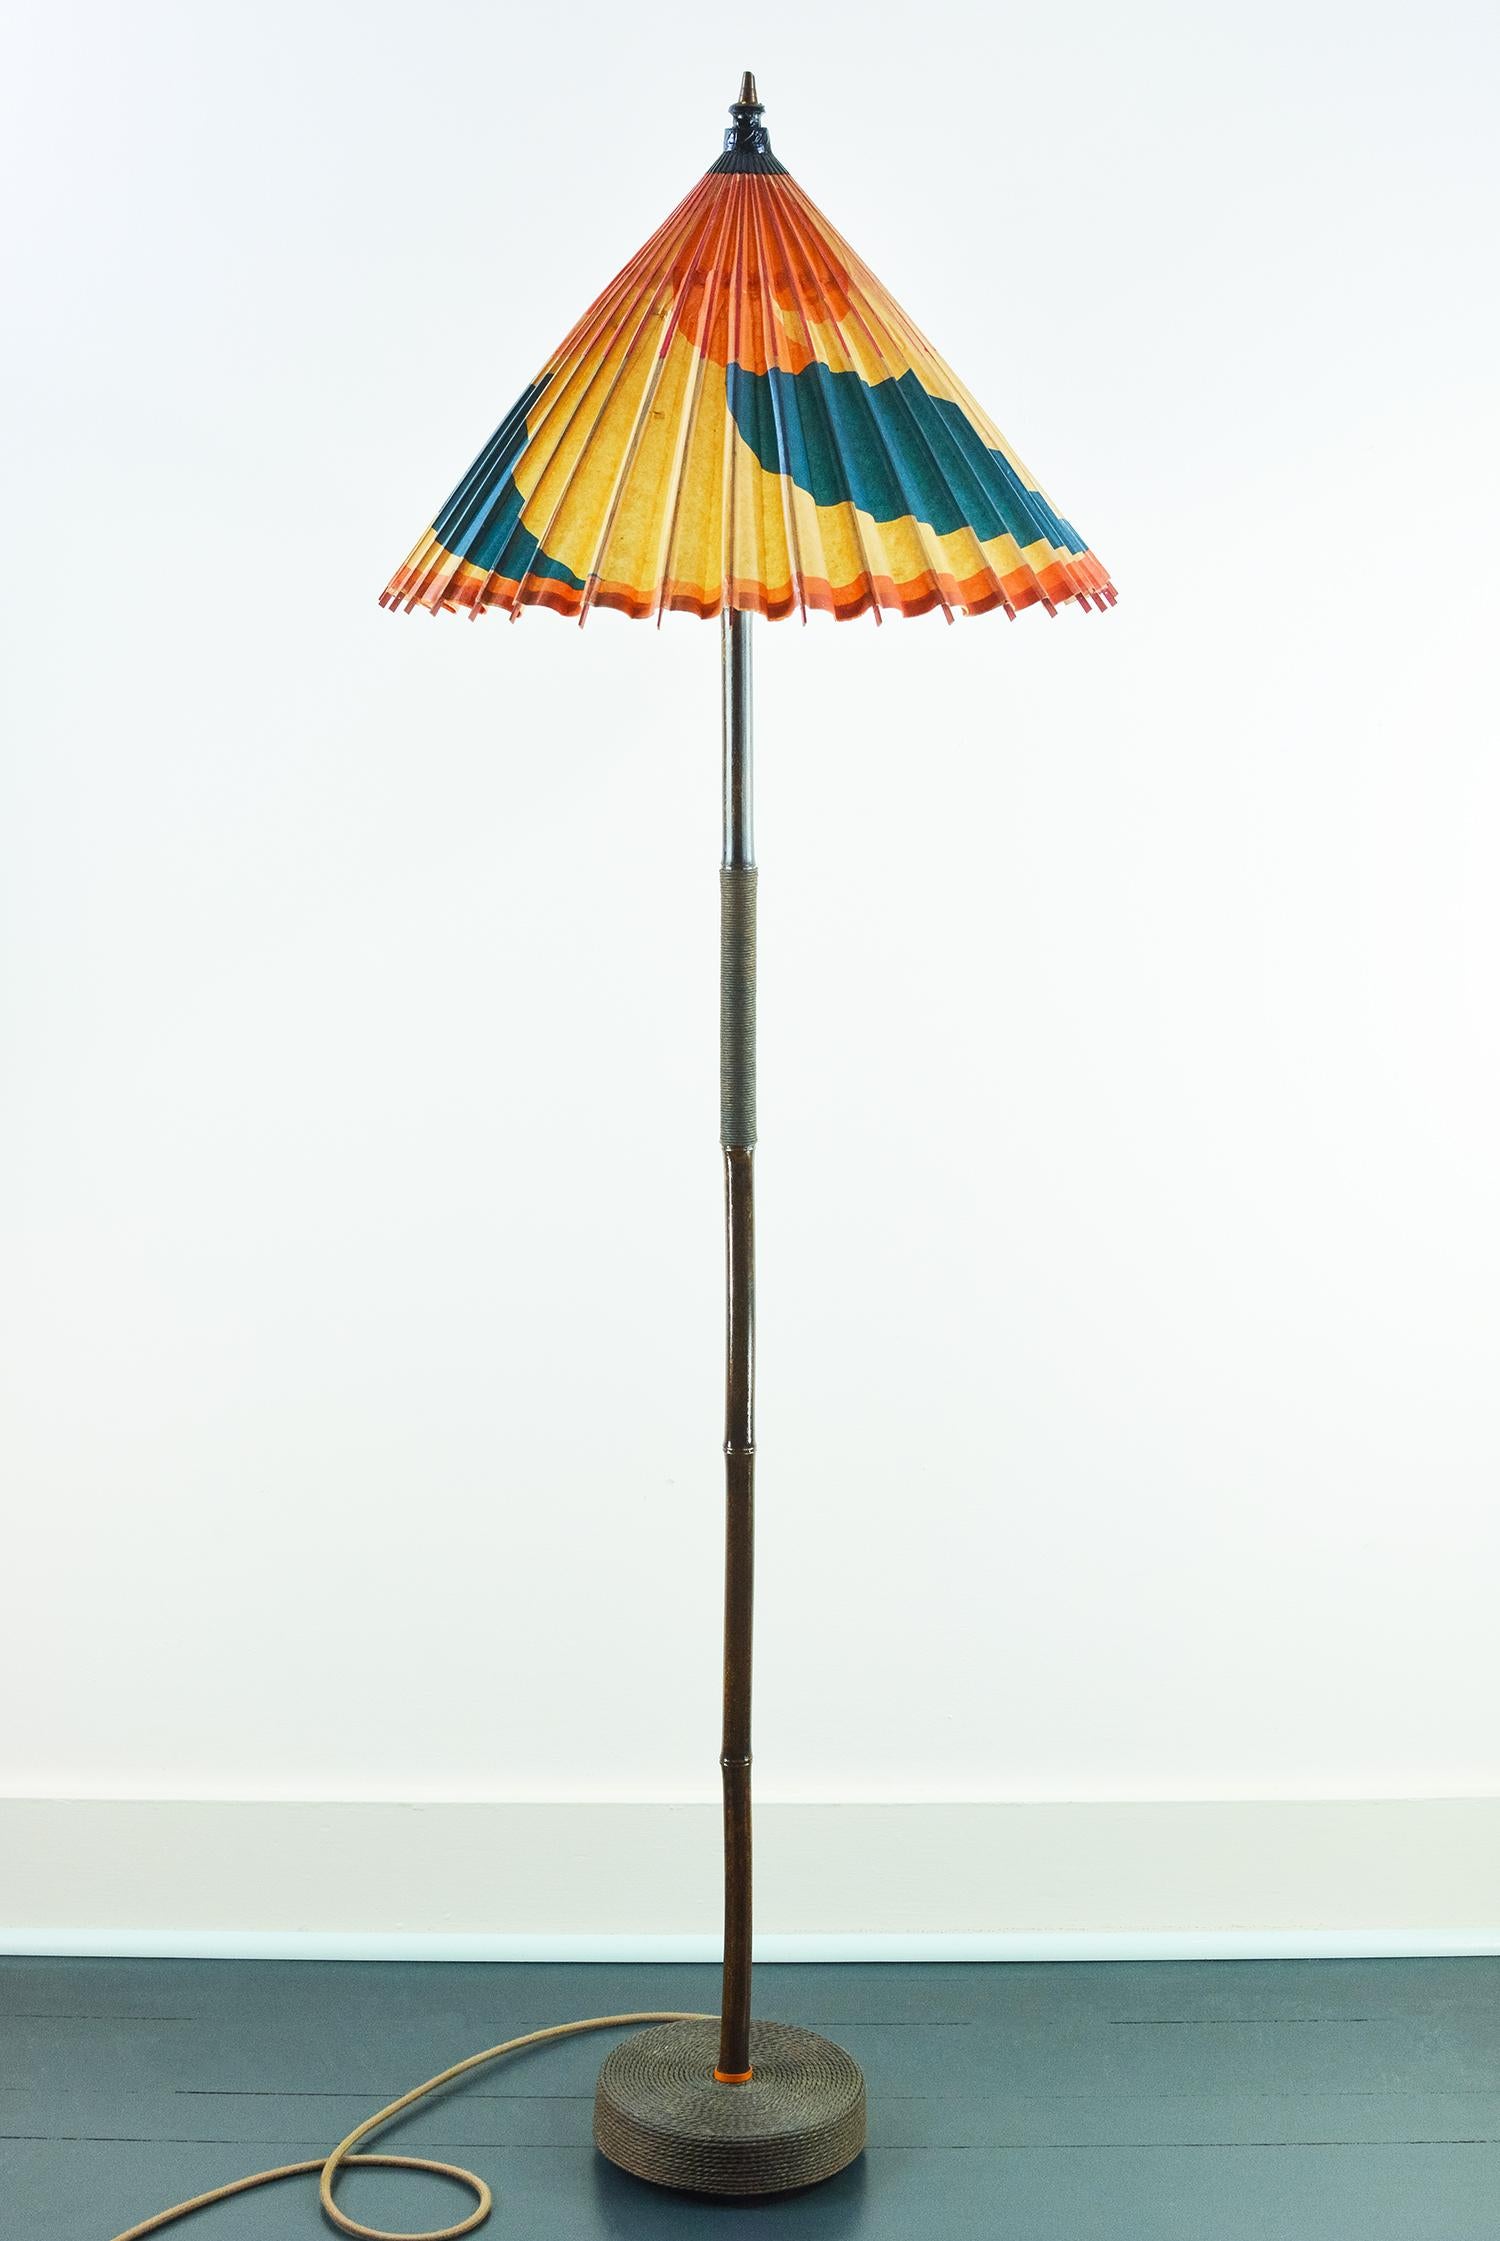 La Collection'S de l'Exposition universelle est une famille de luminaires fabriqués à la main à partir de matériaux durables et d'anciens parasols en papier recyclés offerts aux visiteurs de la plus illustre exposition culturelle du XXe siècle.

Le